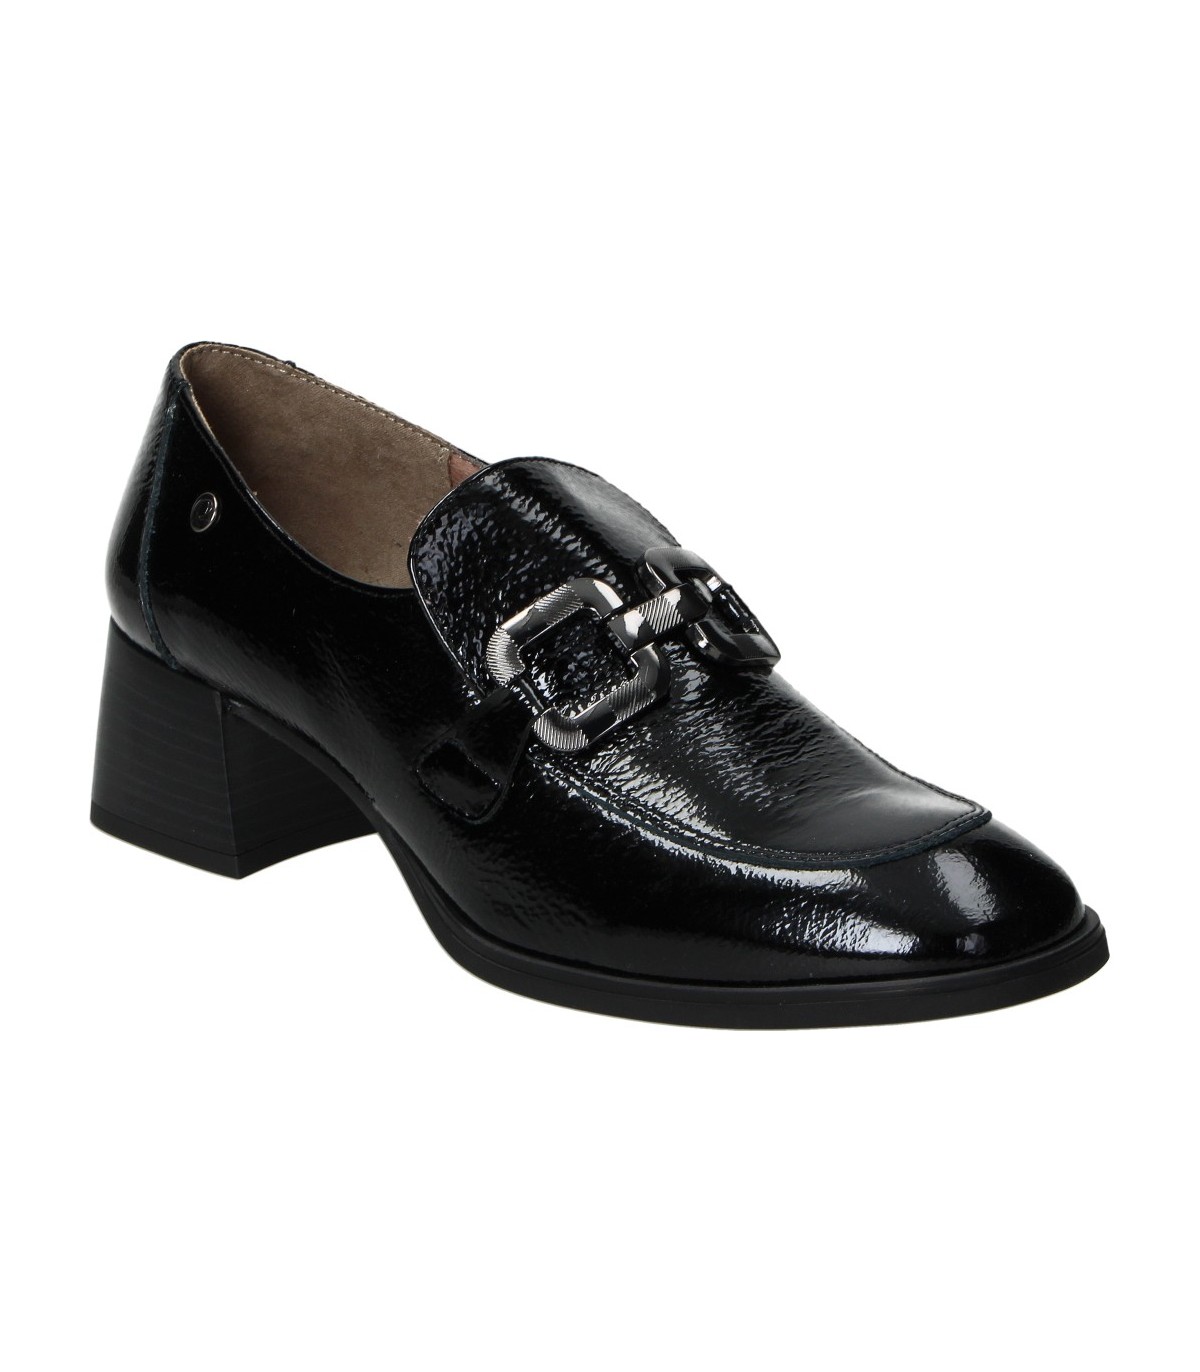 Zapatos de tacón negros KAOLA-TARKE 4450 mujer online en MEGACALZADO